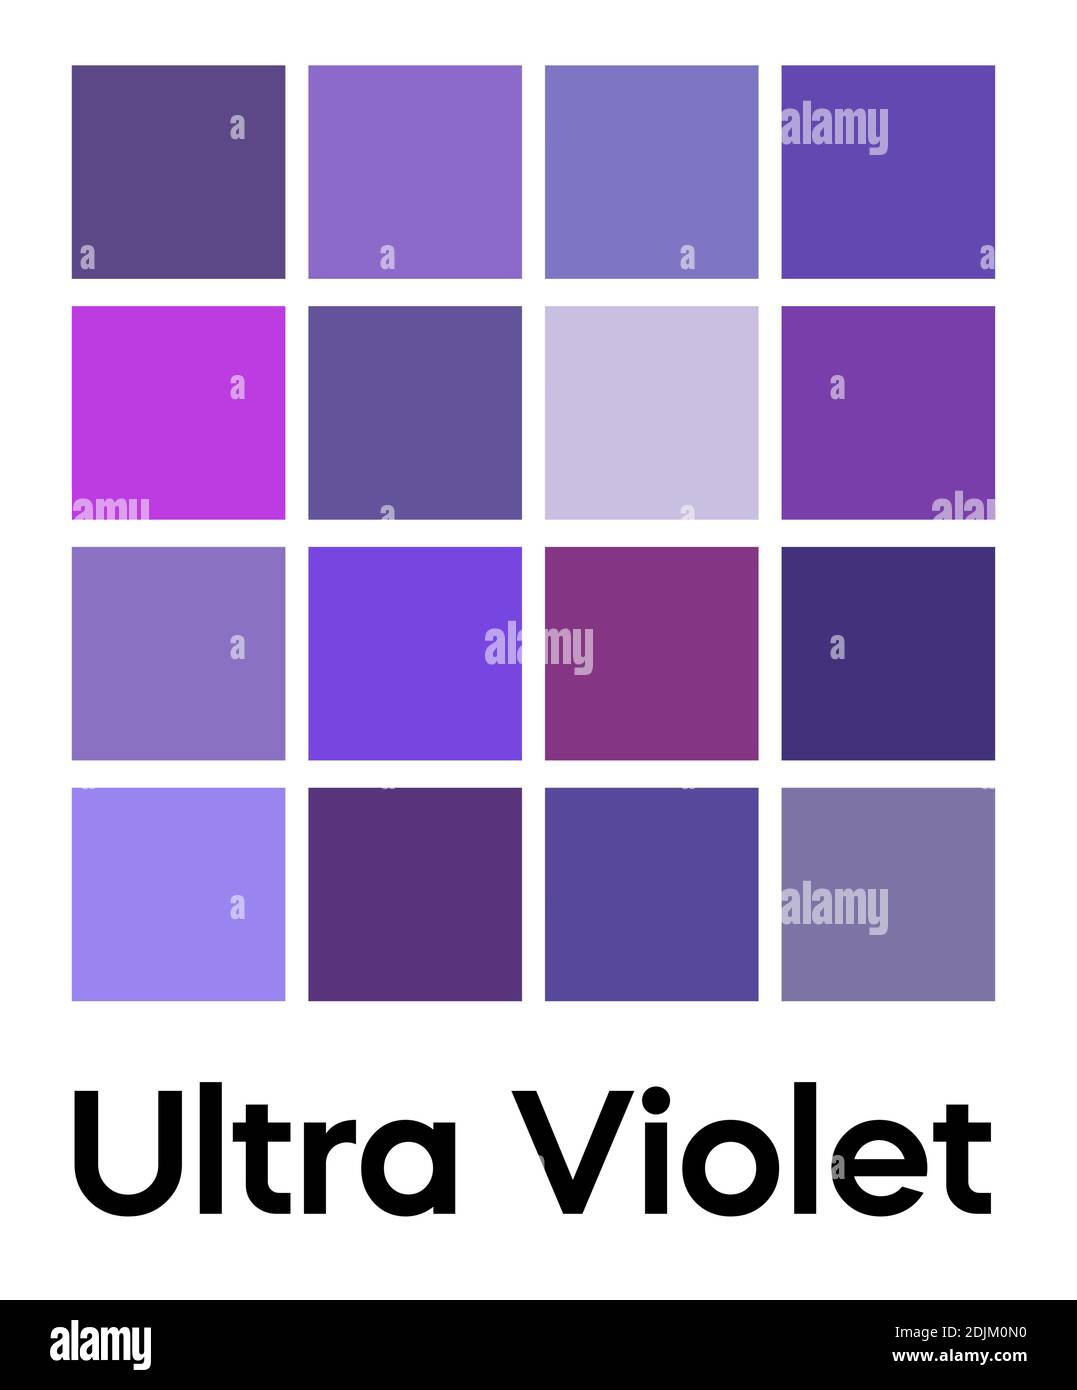 Palette of Ultra Violet Tones là bộ sưu tập hình ảnh được sắp xếp một cách tốt nhất với tông màu chủ đạo là màu tím. Các hình ảnh này sẽ đem lại cảm giác rất lạ và độc đáo cho những ai yêu thích màu tím. Hãy xem hình ảnh liên quan để khám phá những tông màu tuyệt đẹp của Palette of Ultra Violet Tones!